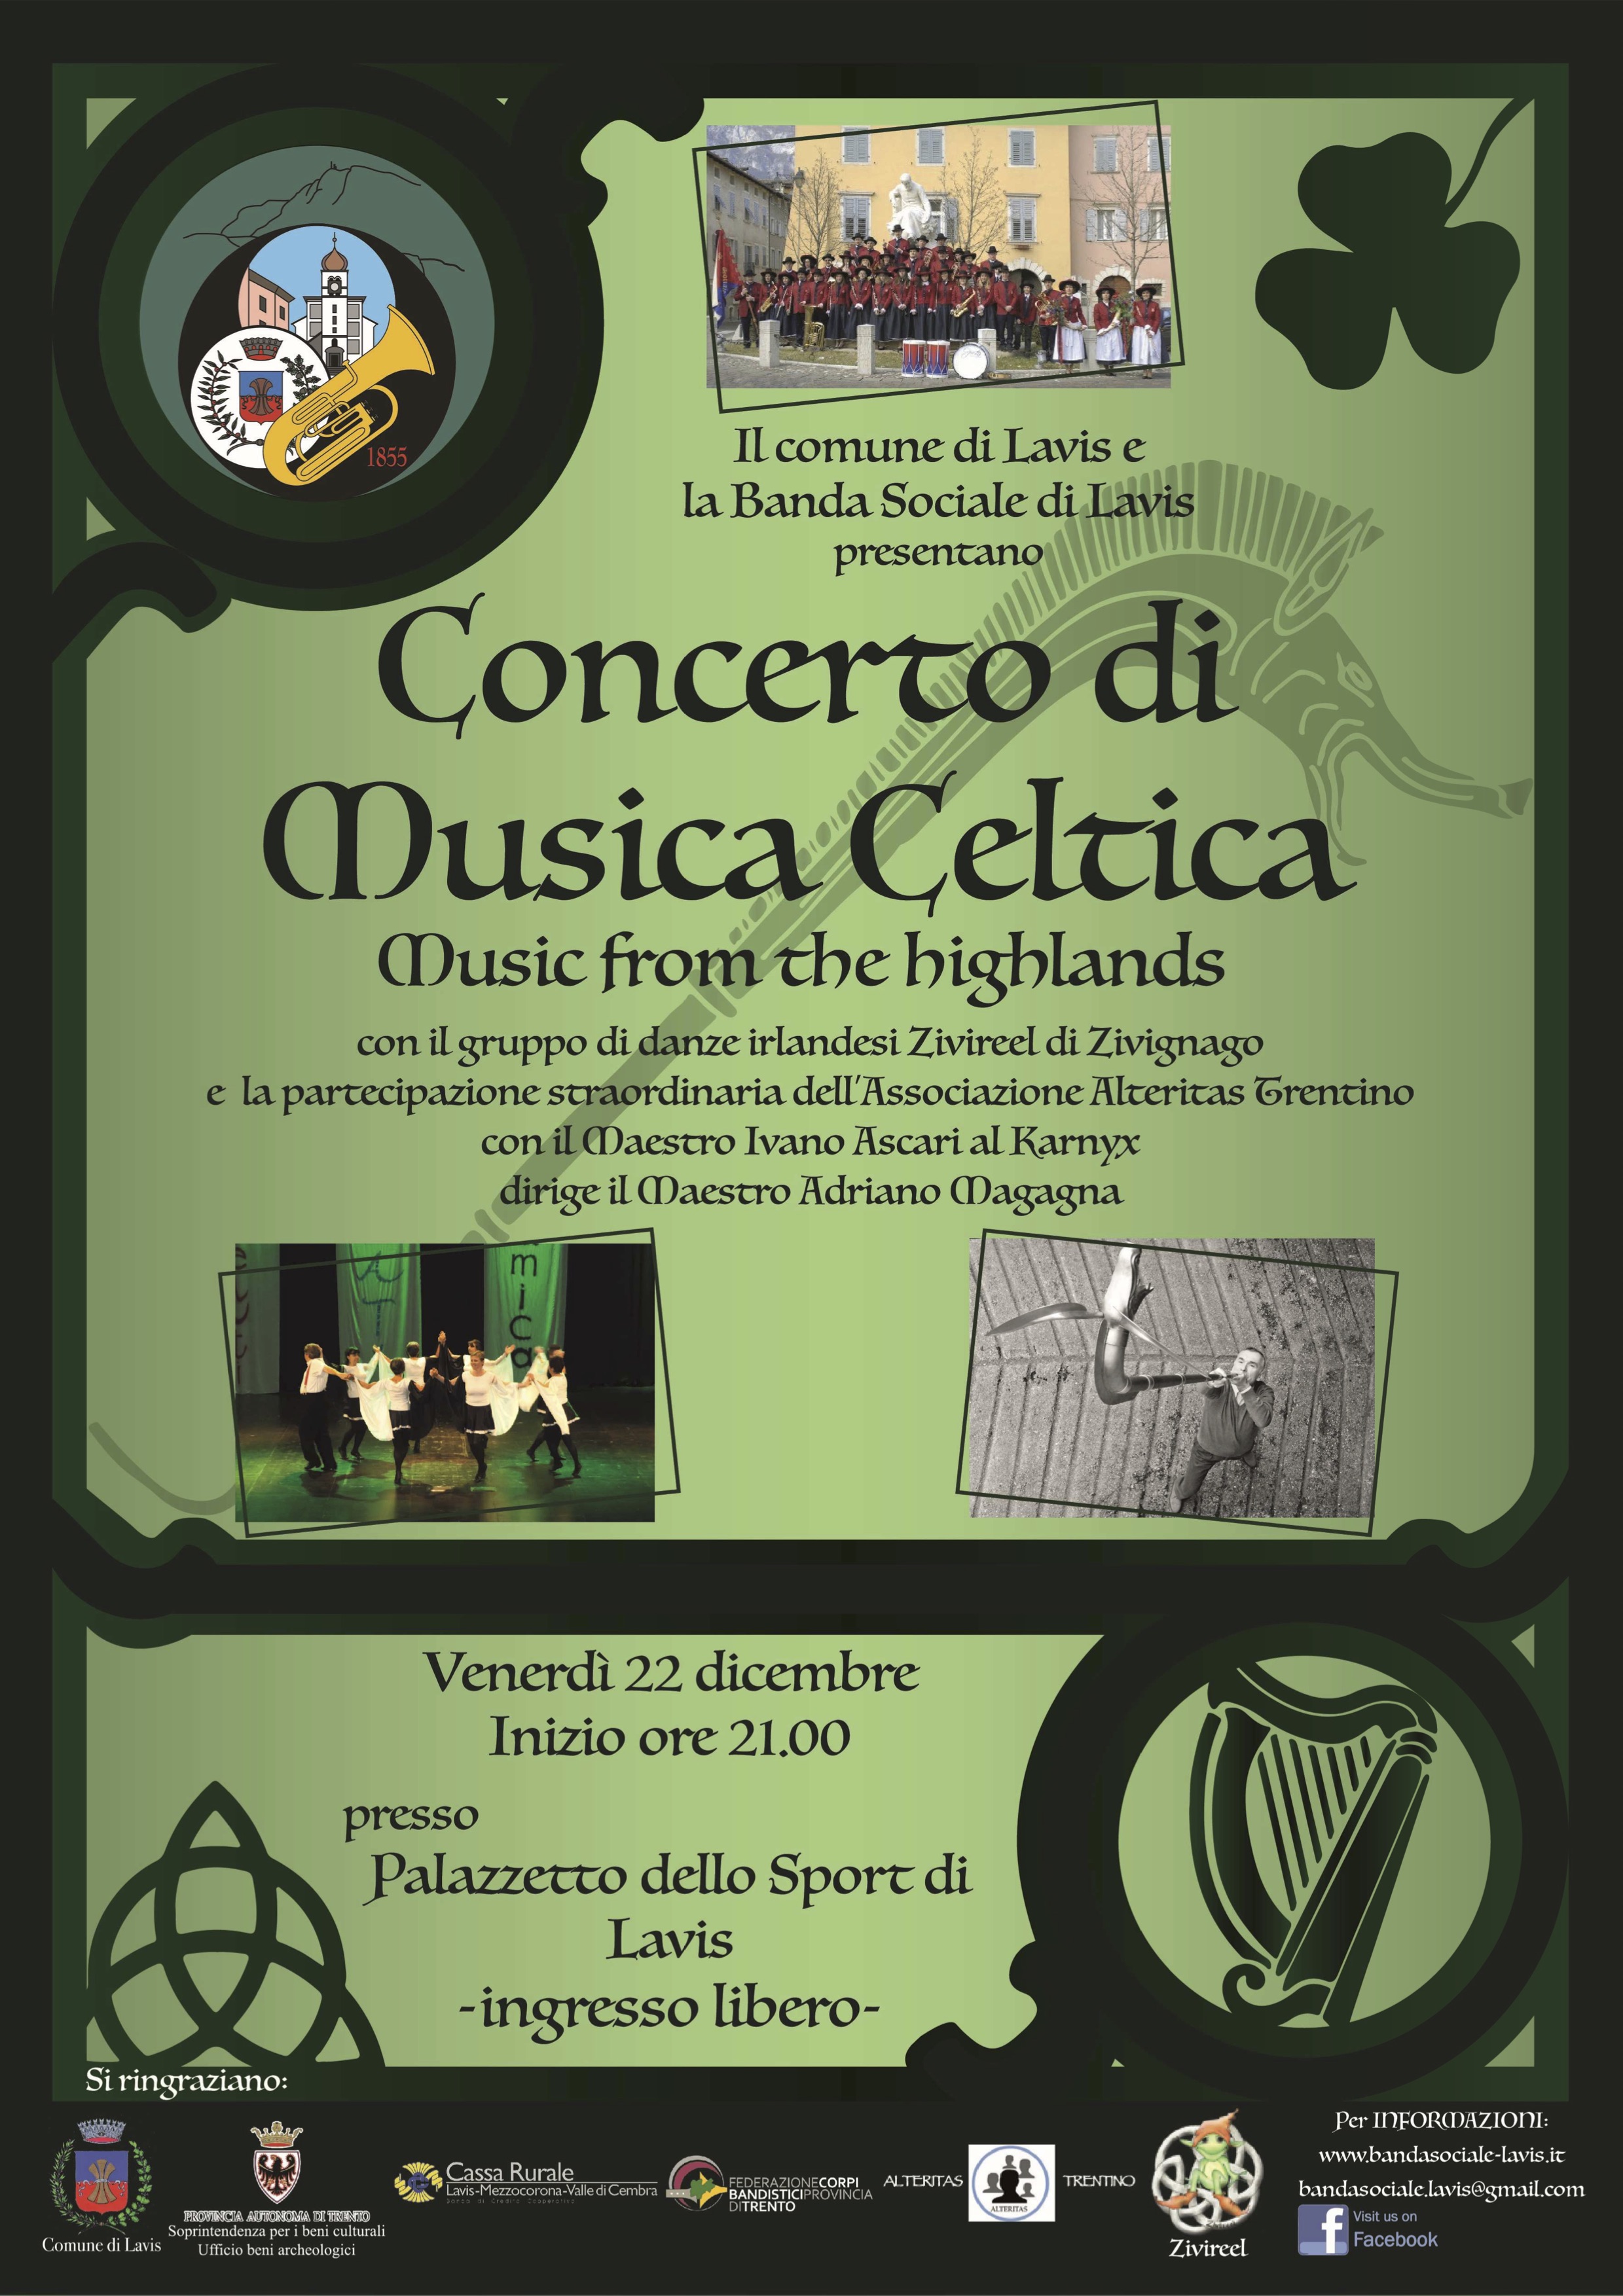 Concerto di musica celtica